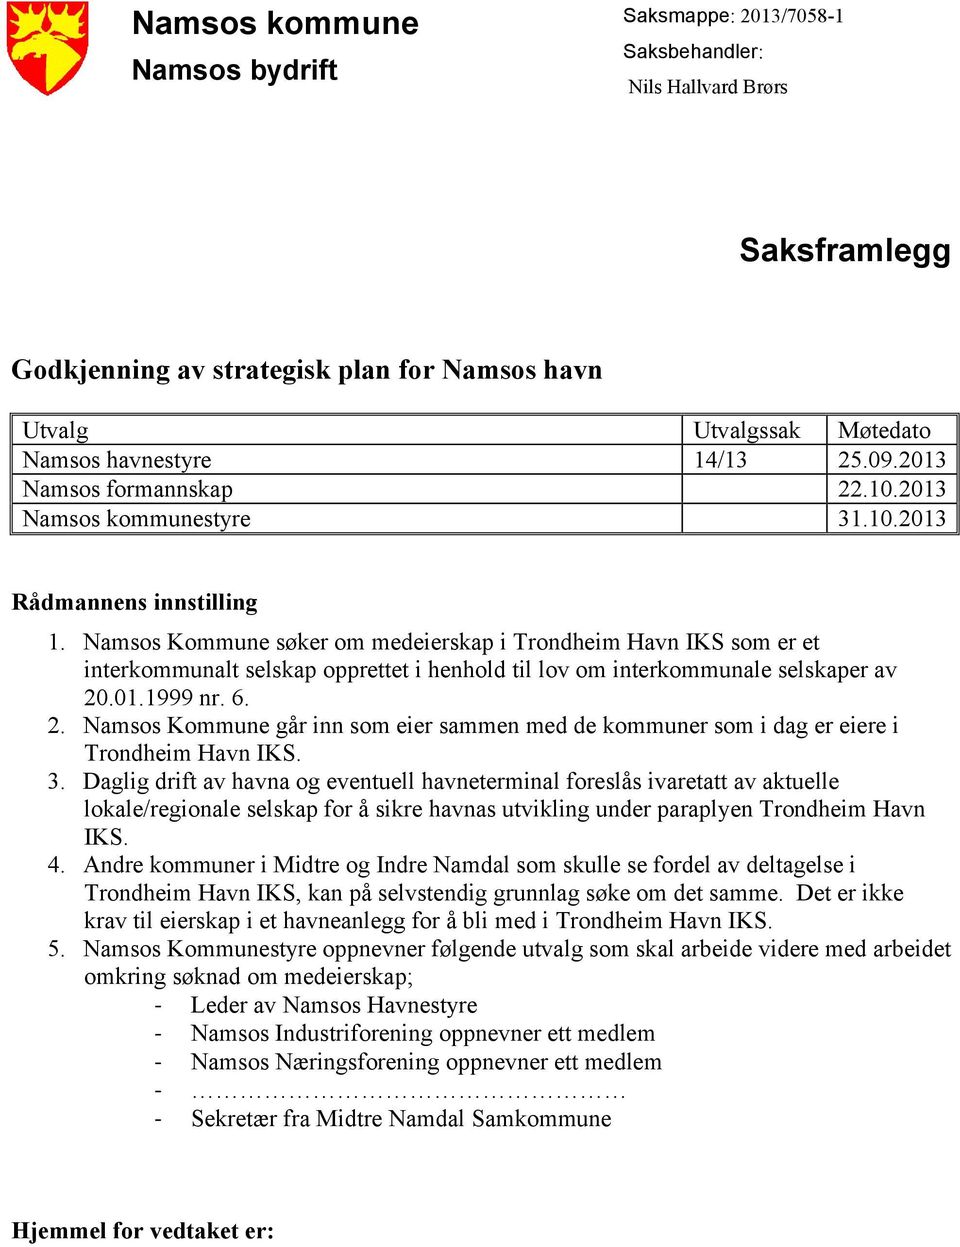 Namsos Kommune søker om medeierskap i Trondheim Havn IKS som er et interkommunalt selskap opprettet i henhold til lov om interkommunale selskaper av 20